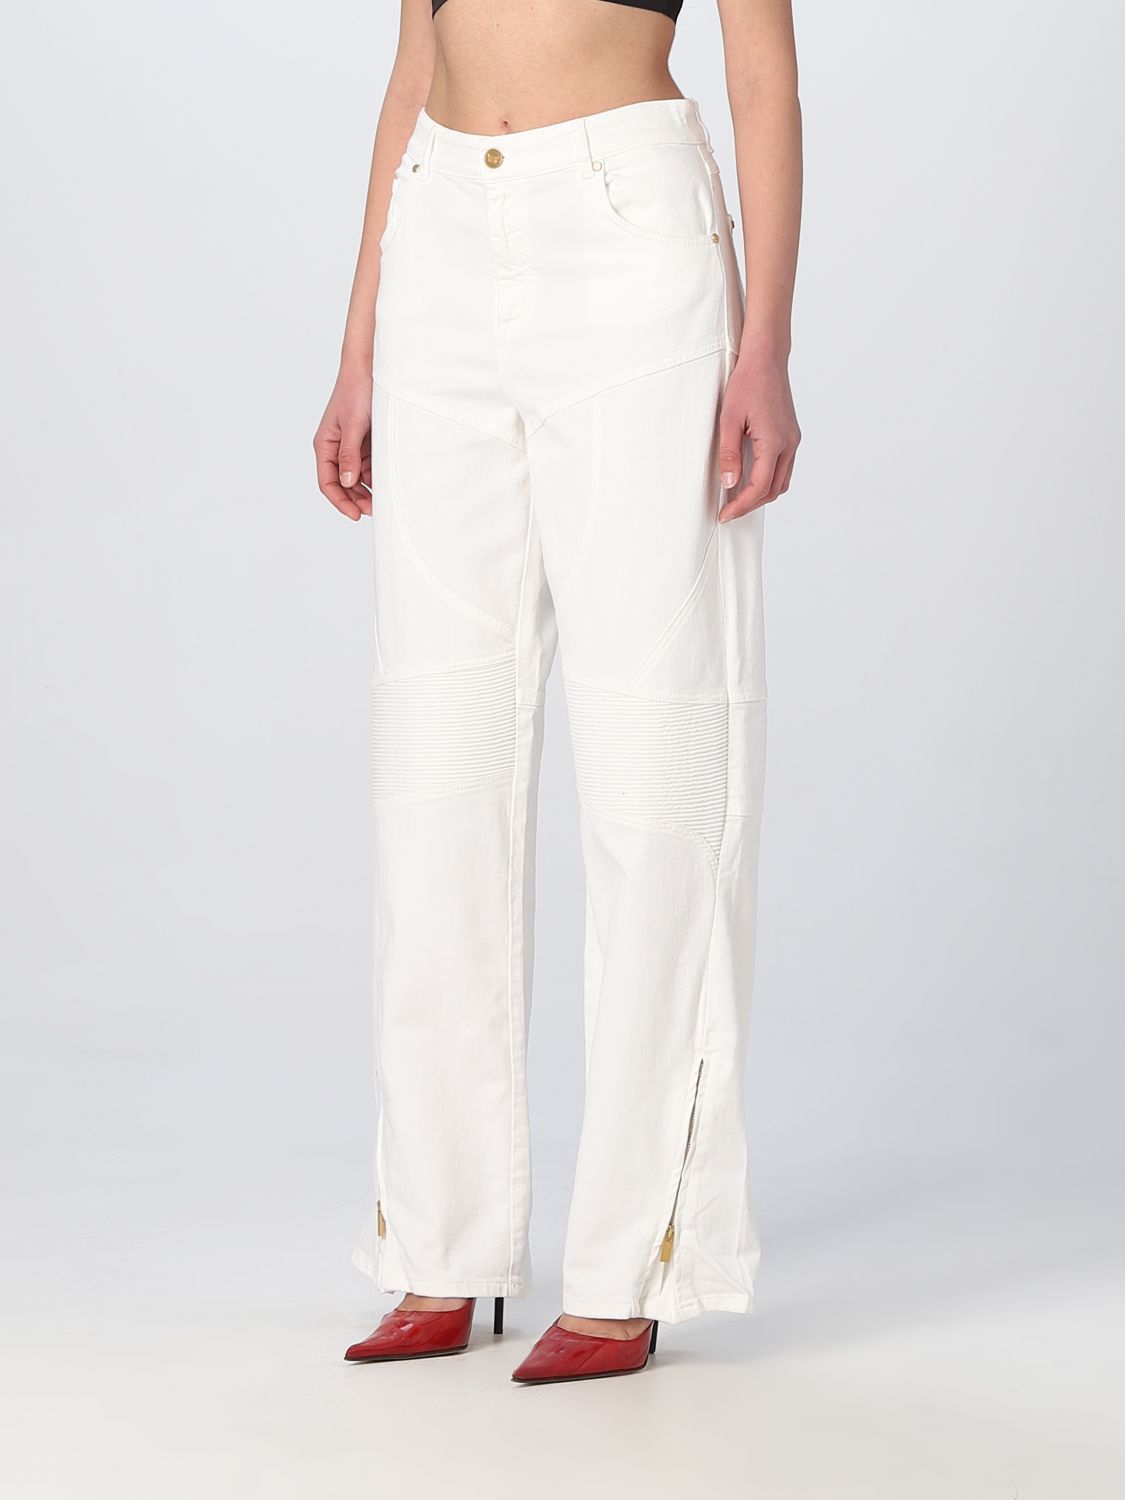 Pantalon Blumarine: Pantalon Blumarine femme blanc 4